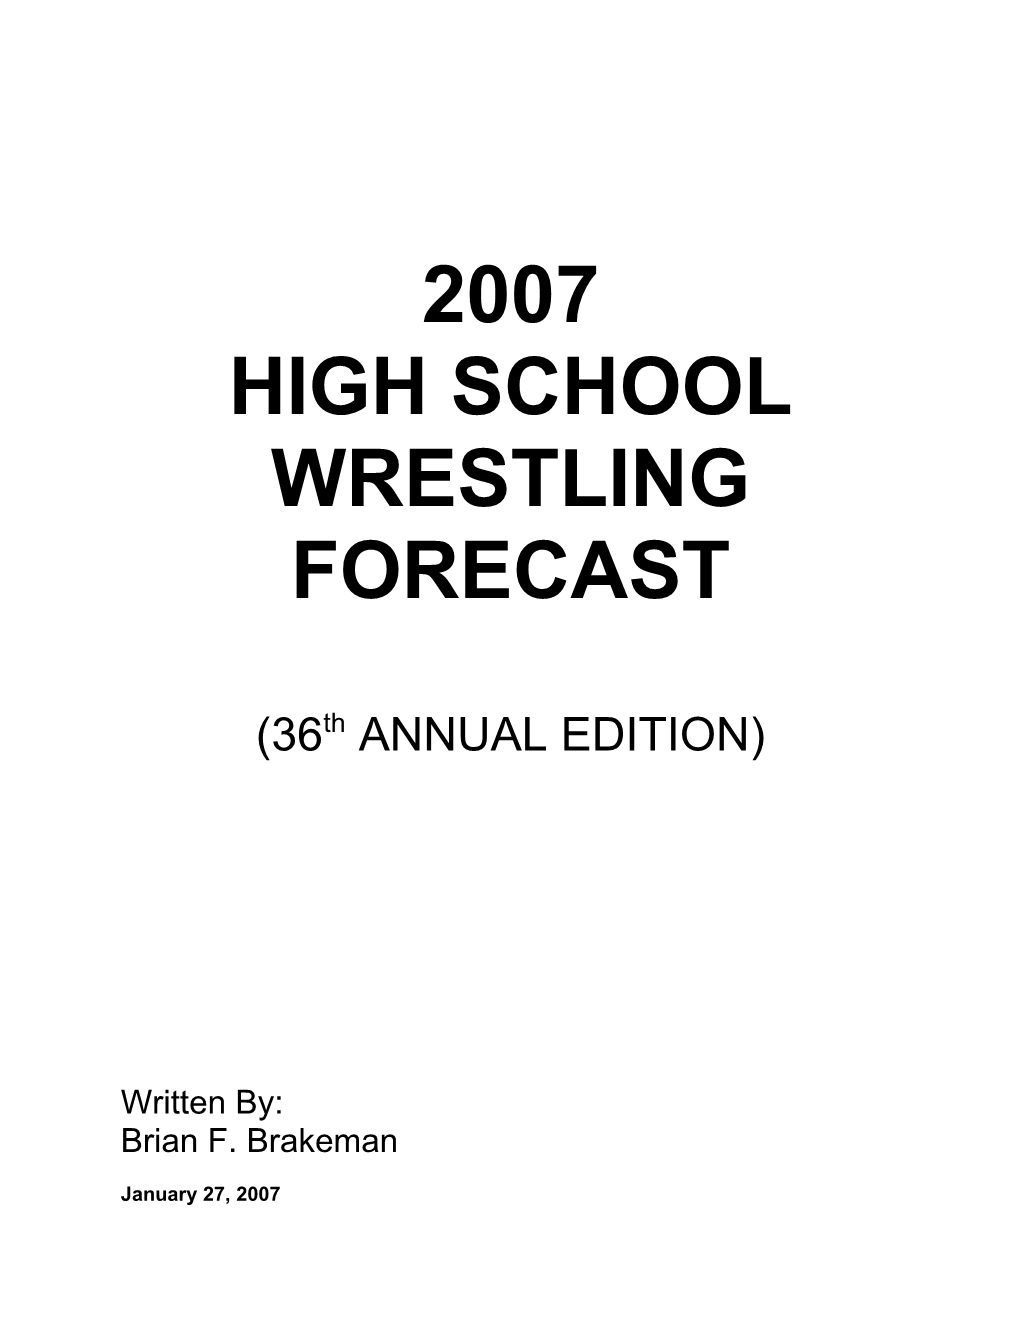 2007 High School Wrestling Forecast